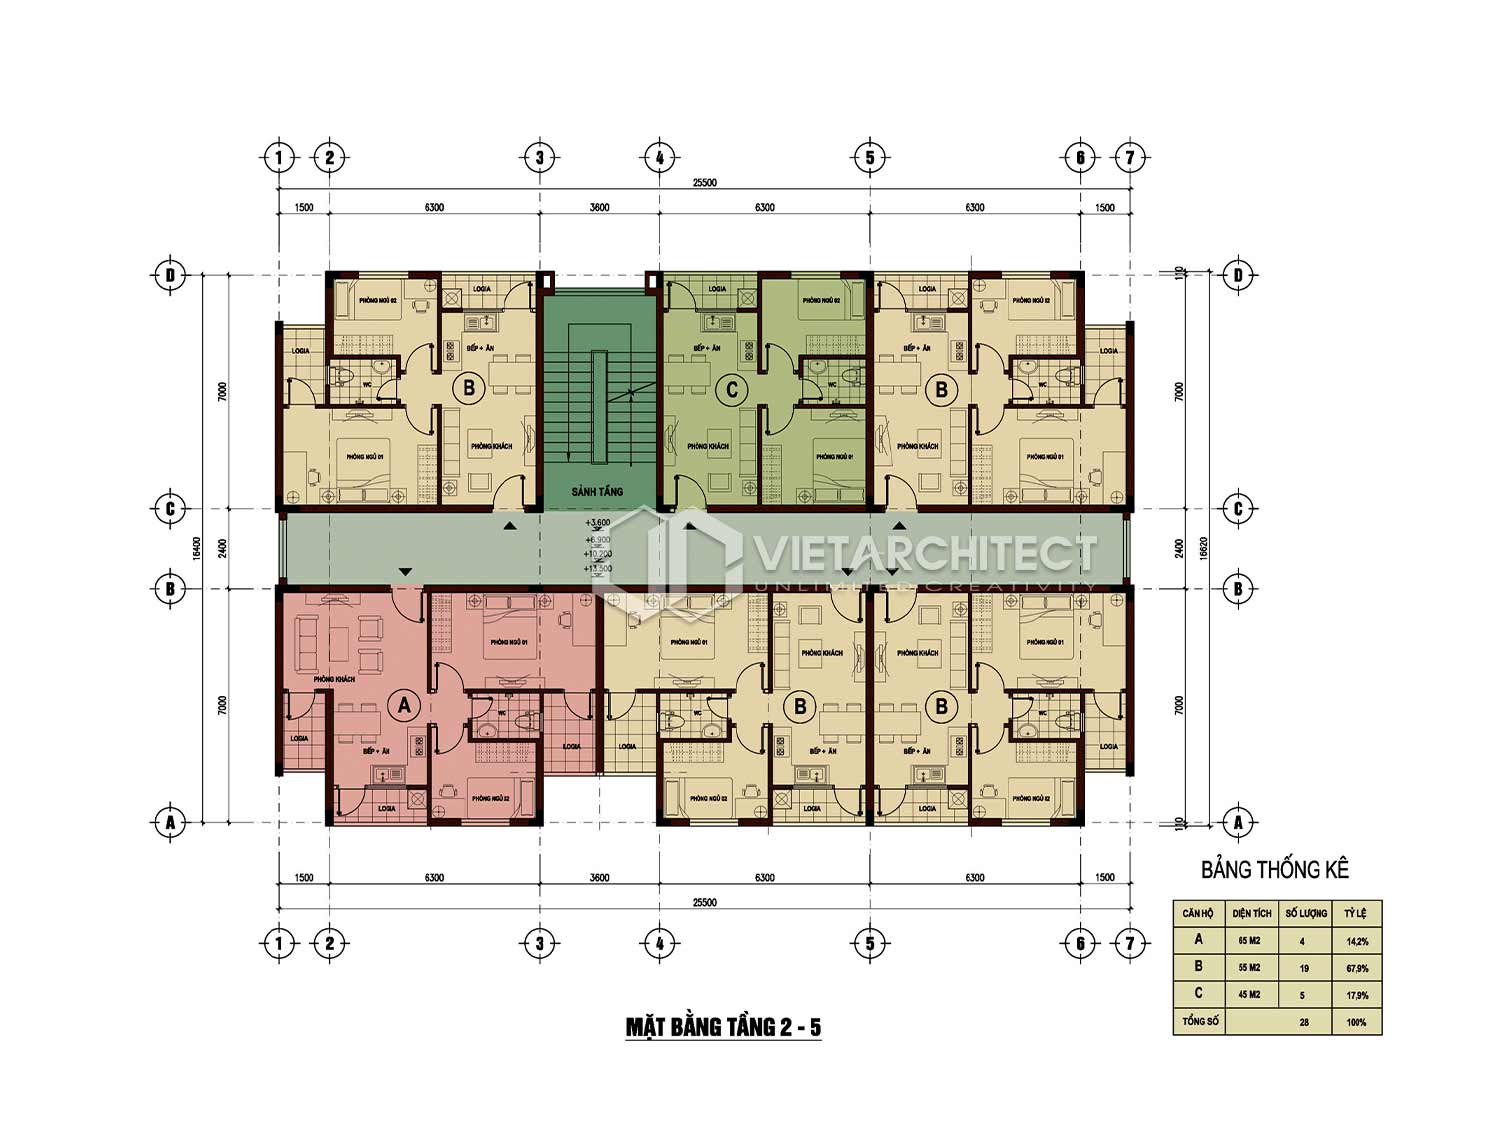 Thiết kế chung cư thu nhập thấp mặt bằng tầng 2-5